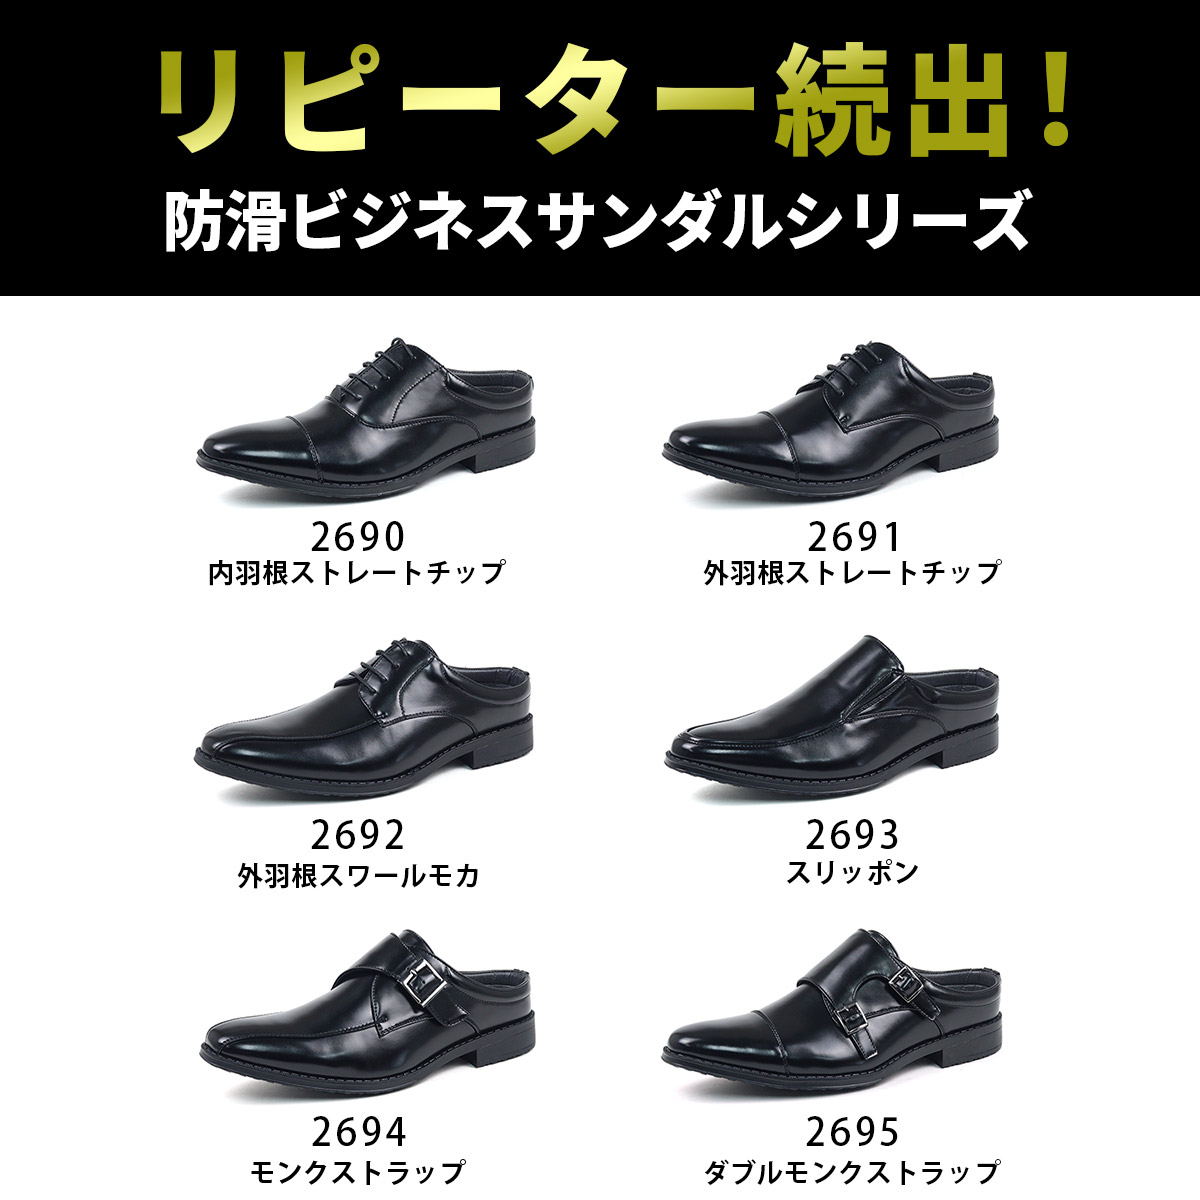 ビジネスシューズ メンズ サンダル 夏用 蒸れにくい ビジネスサンダル 滑りにくい スリッパ 革靴 スリッポン 通気性 かかとなし オフィス 紳士靴 PUレザー 社内履き No.2690-2695 AAA  